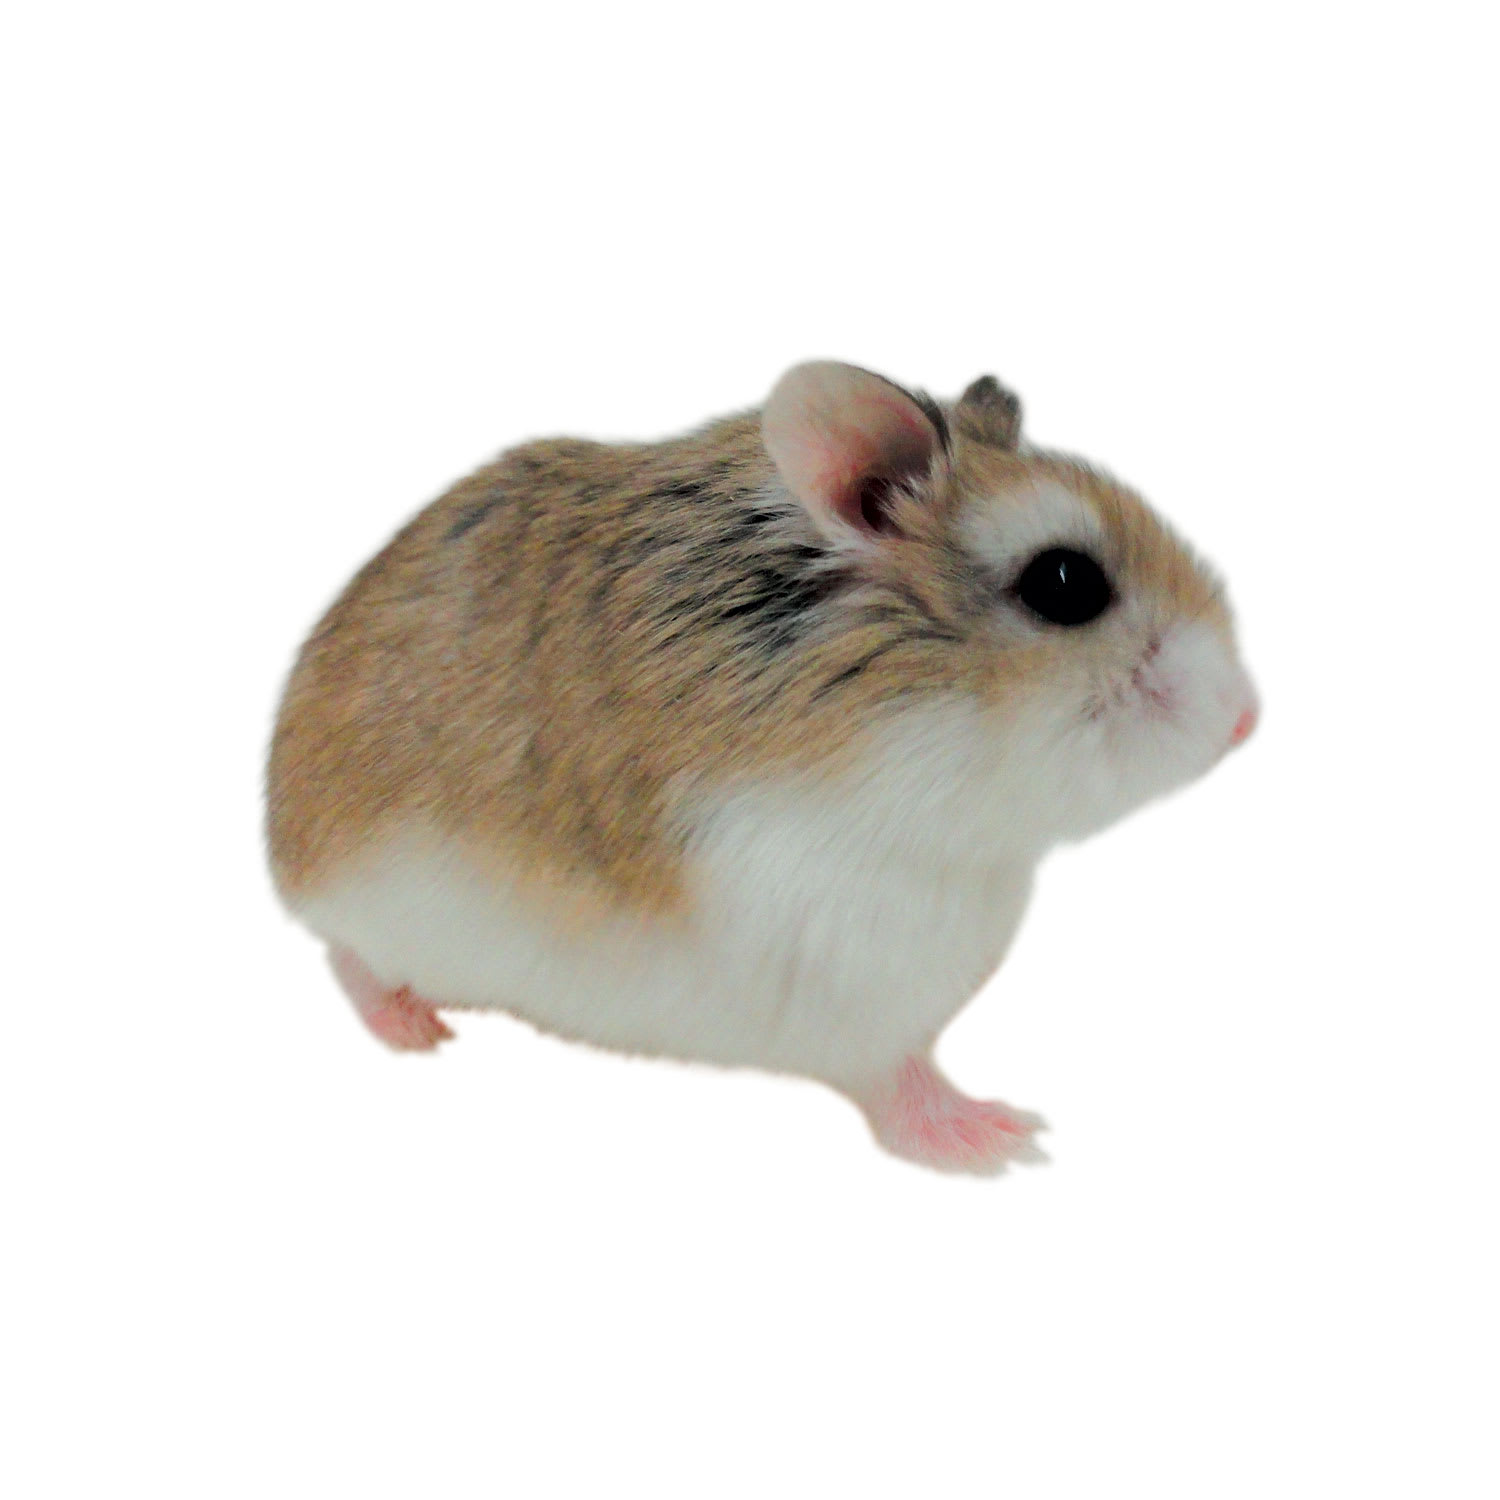 Roborovski Hamsters For Sale Robo Dwarf Hamsters For Sale Petco,Corian Vs Granite Countertops